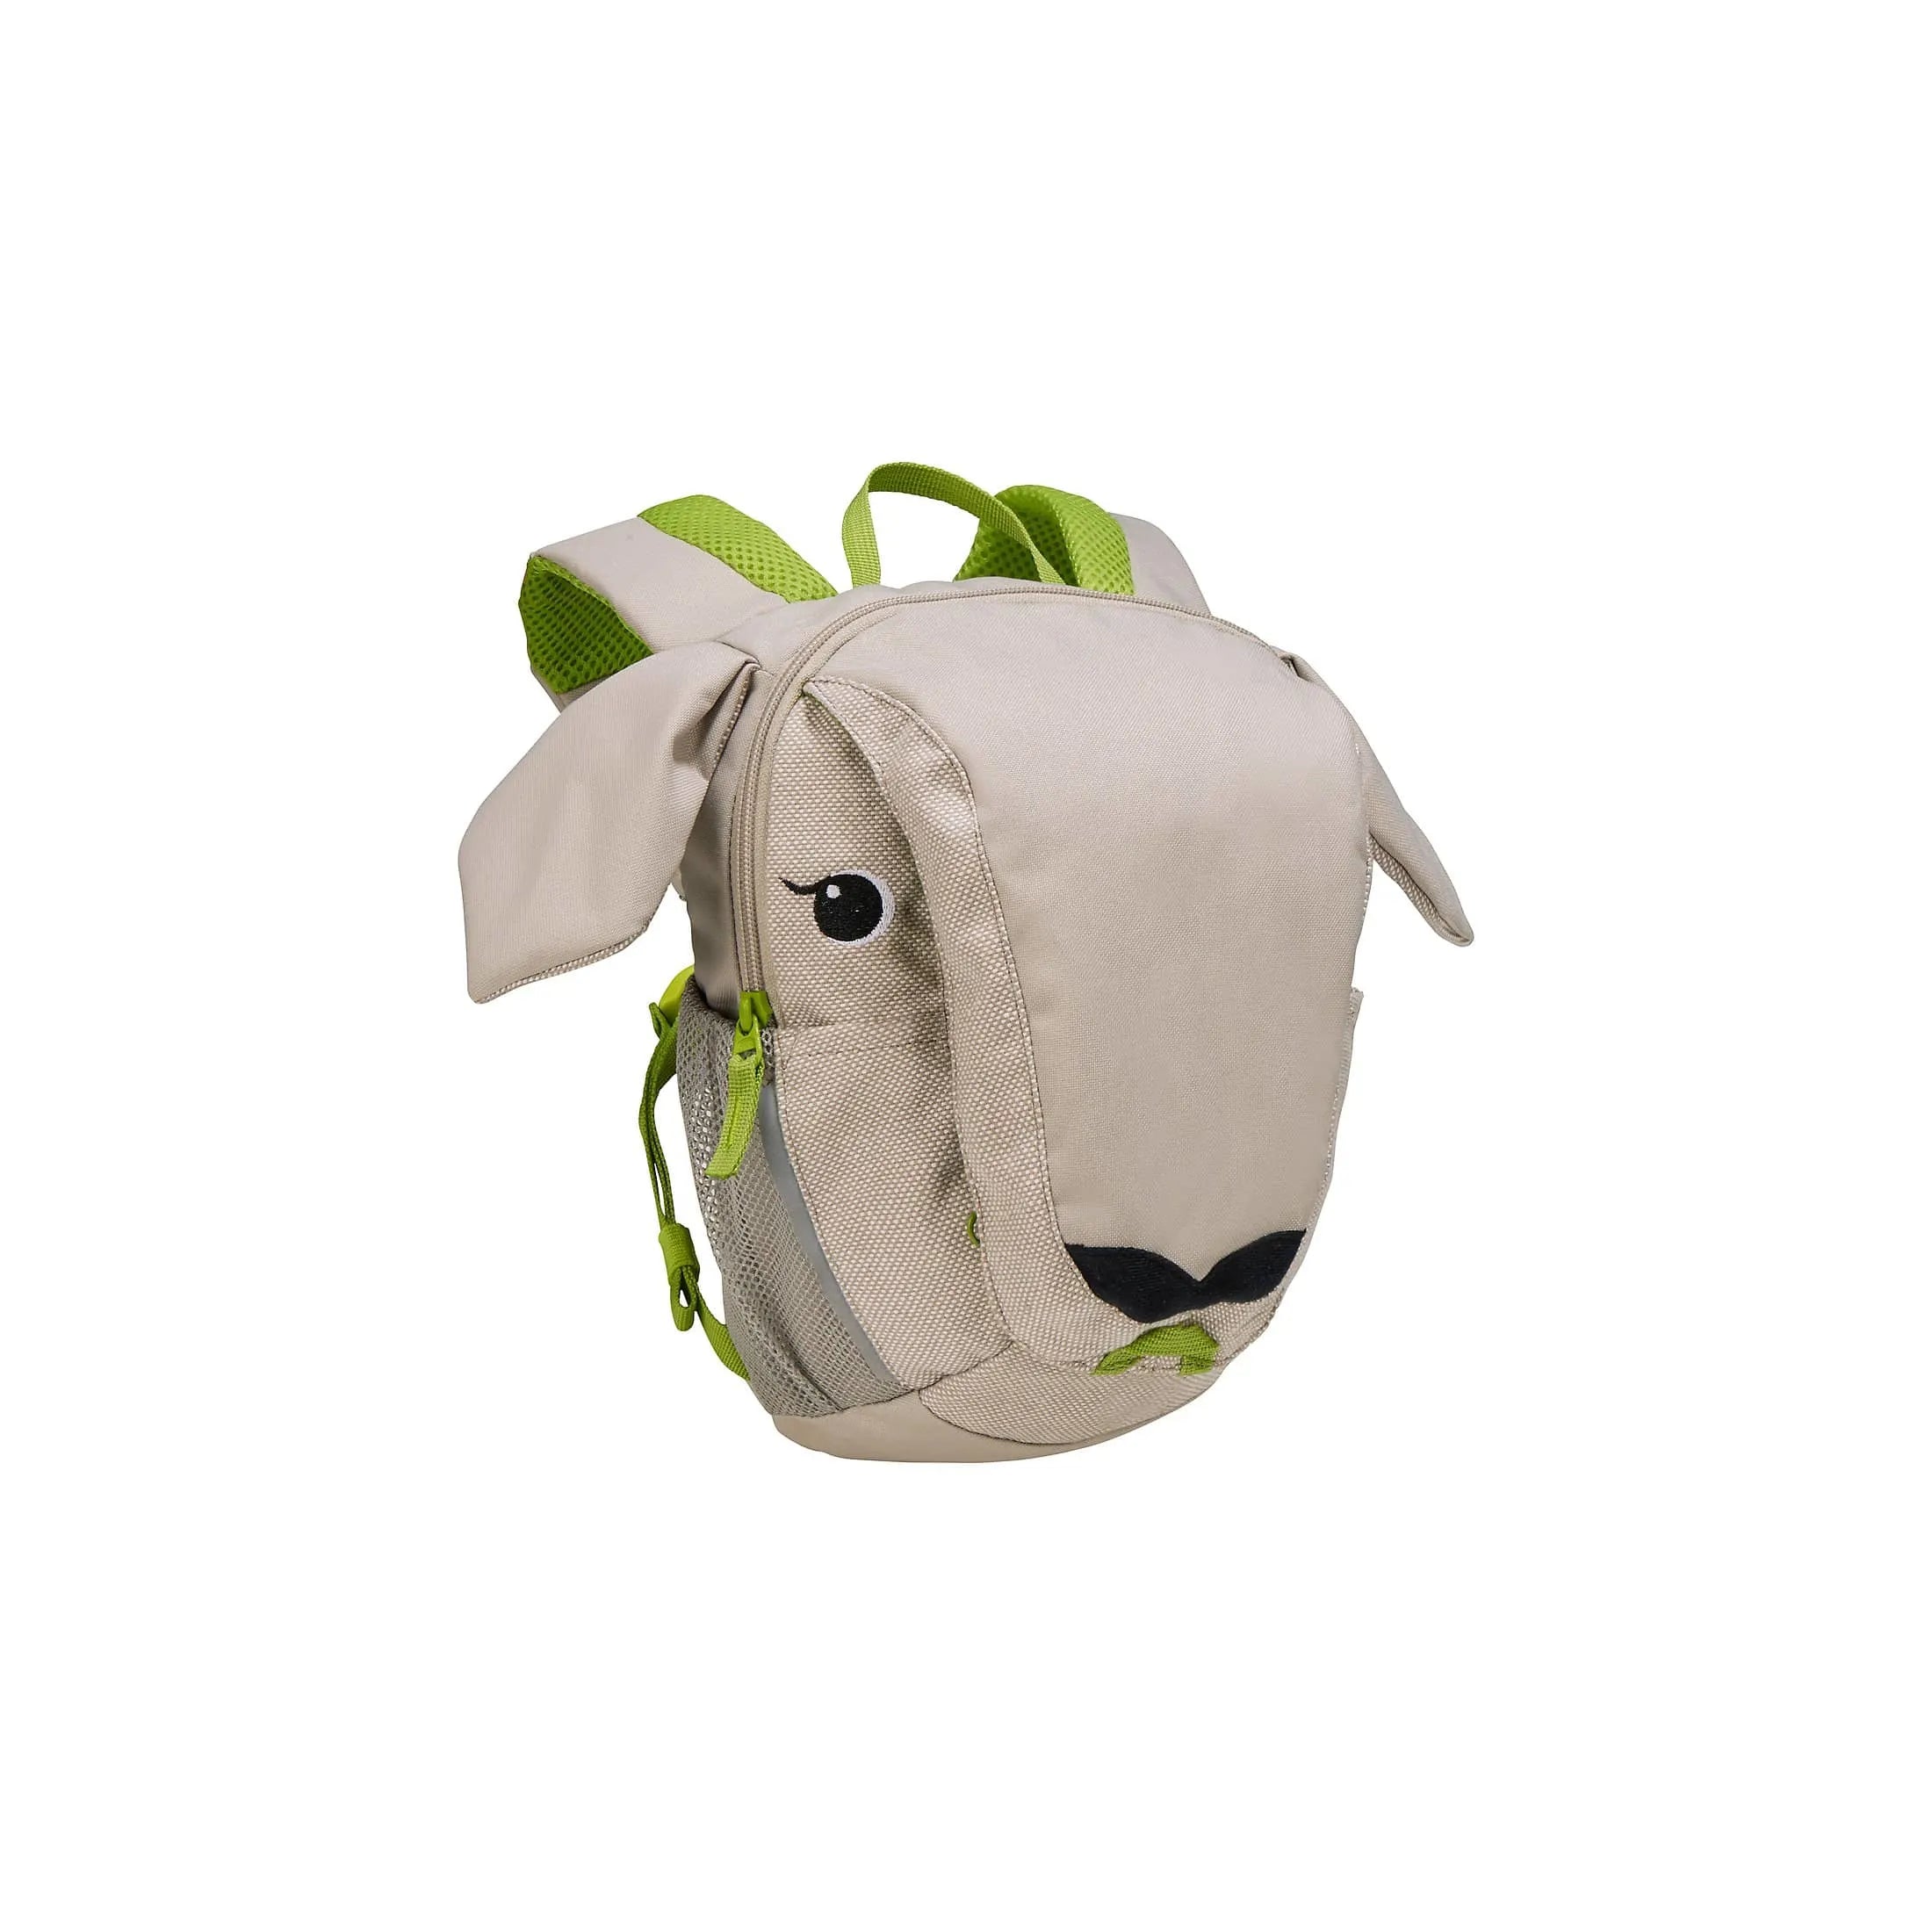 Vaude Family Flocke children's backpack 29 cm - calf